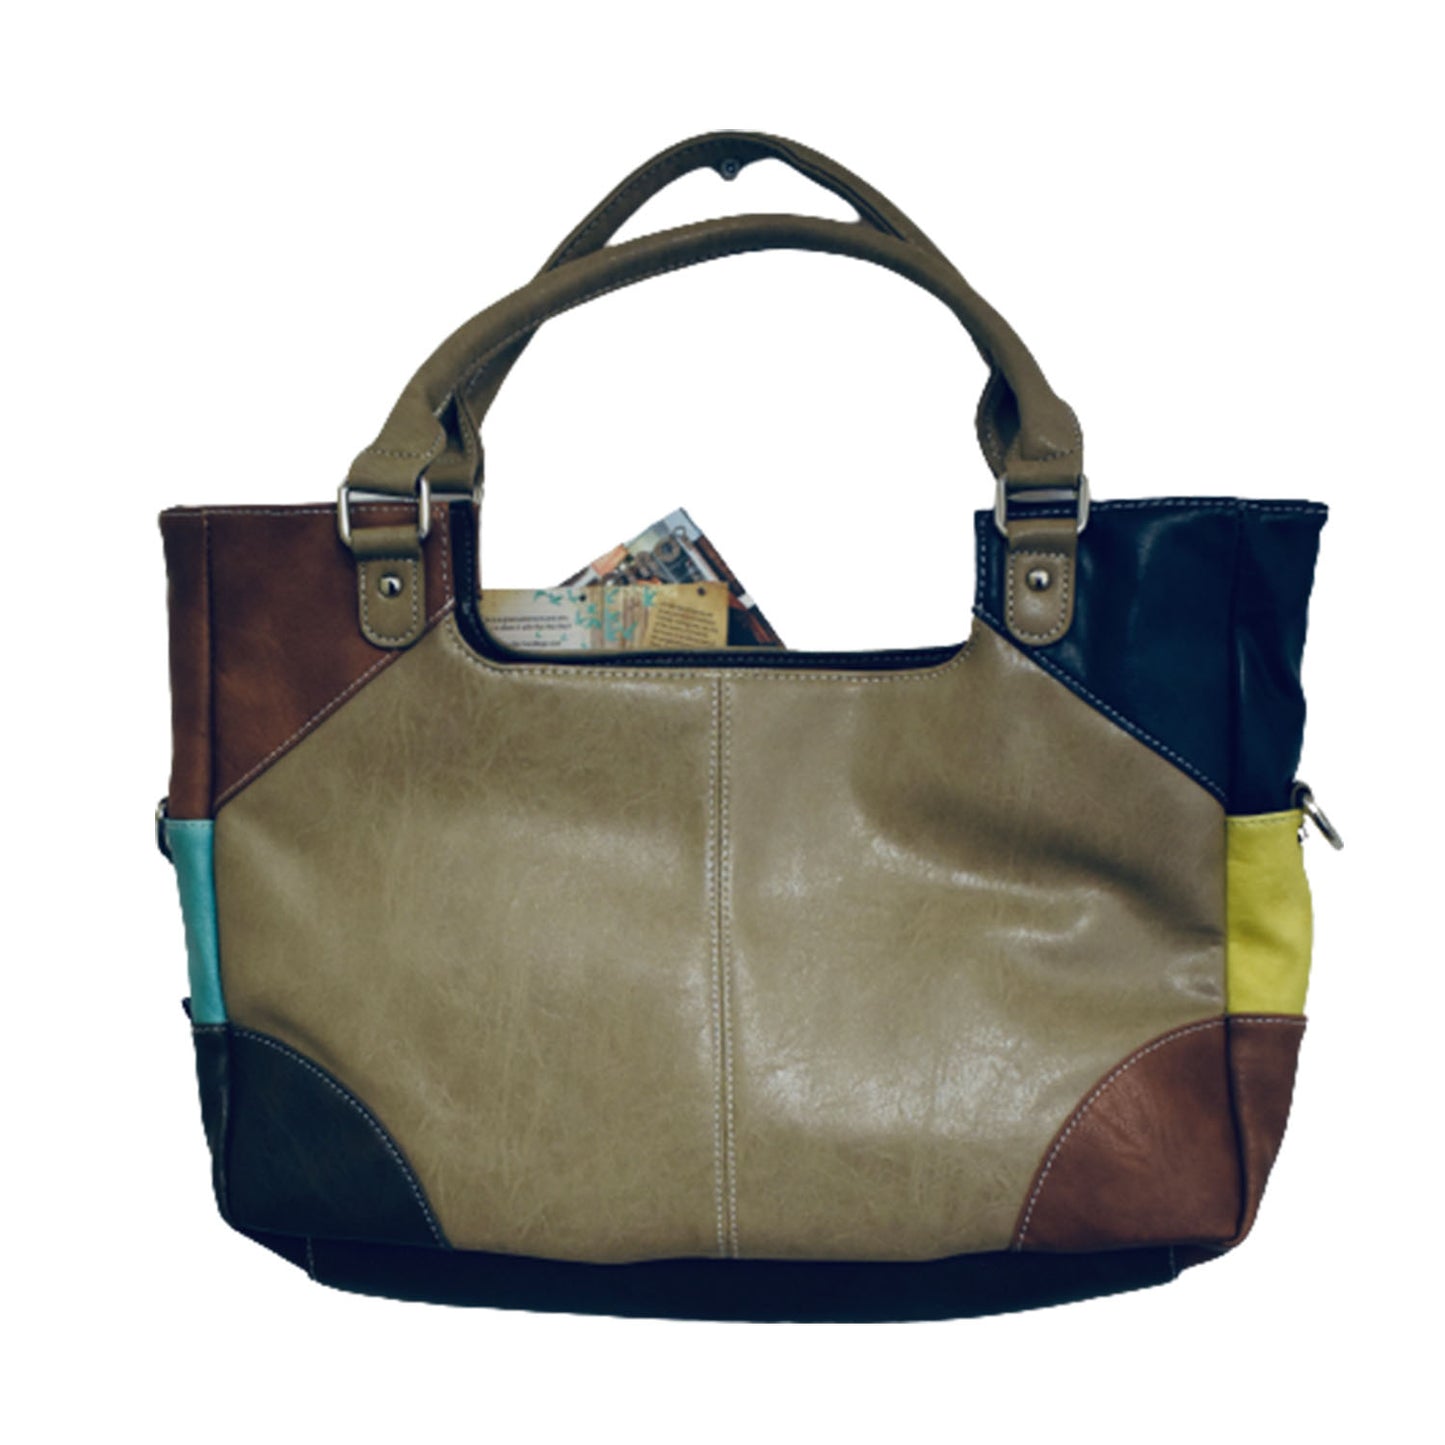 Ganesha handicrafts Multi Leather Bag, Bag, Multi color bag, Hand bag, Leather bag